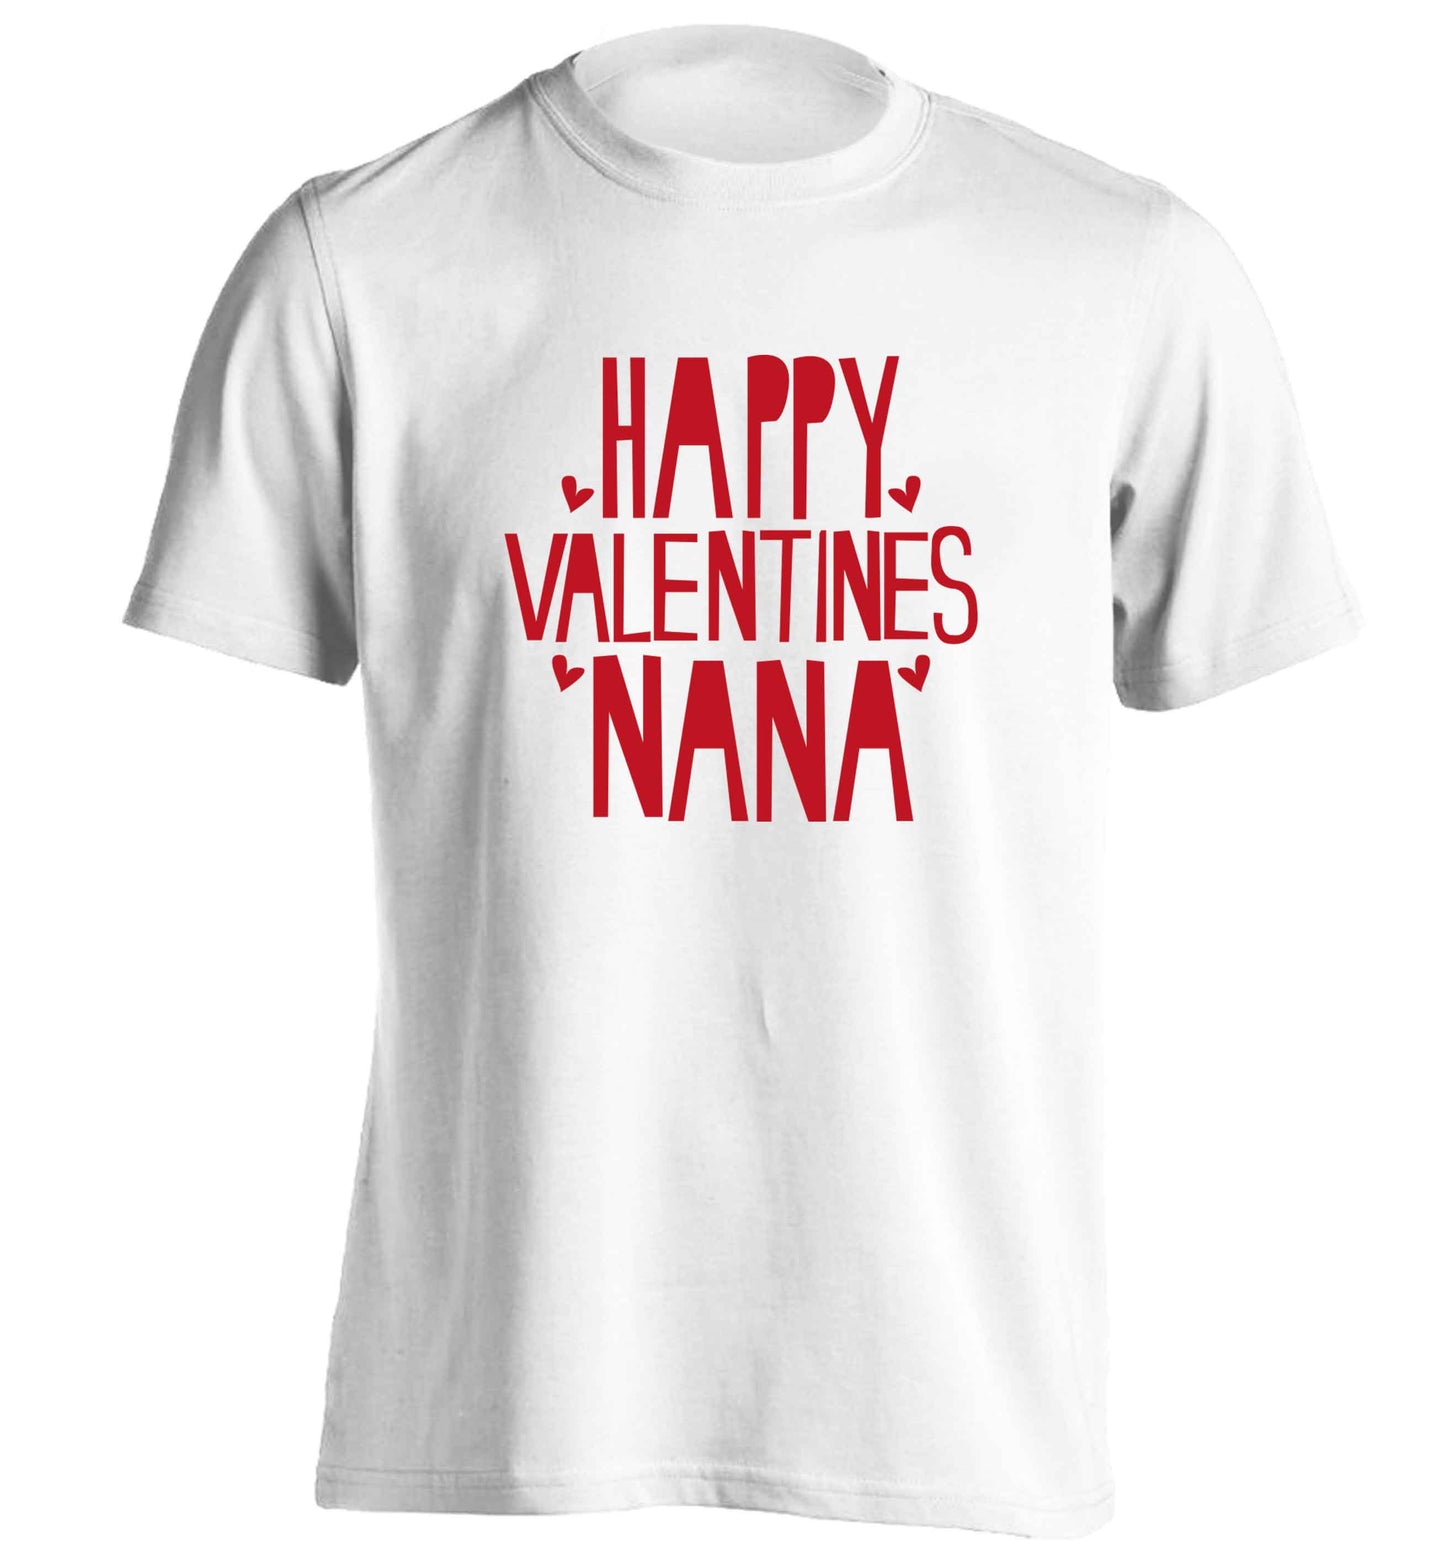 Happy valentines nana adults unisex white Tshirt 2XL